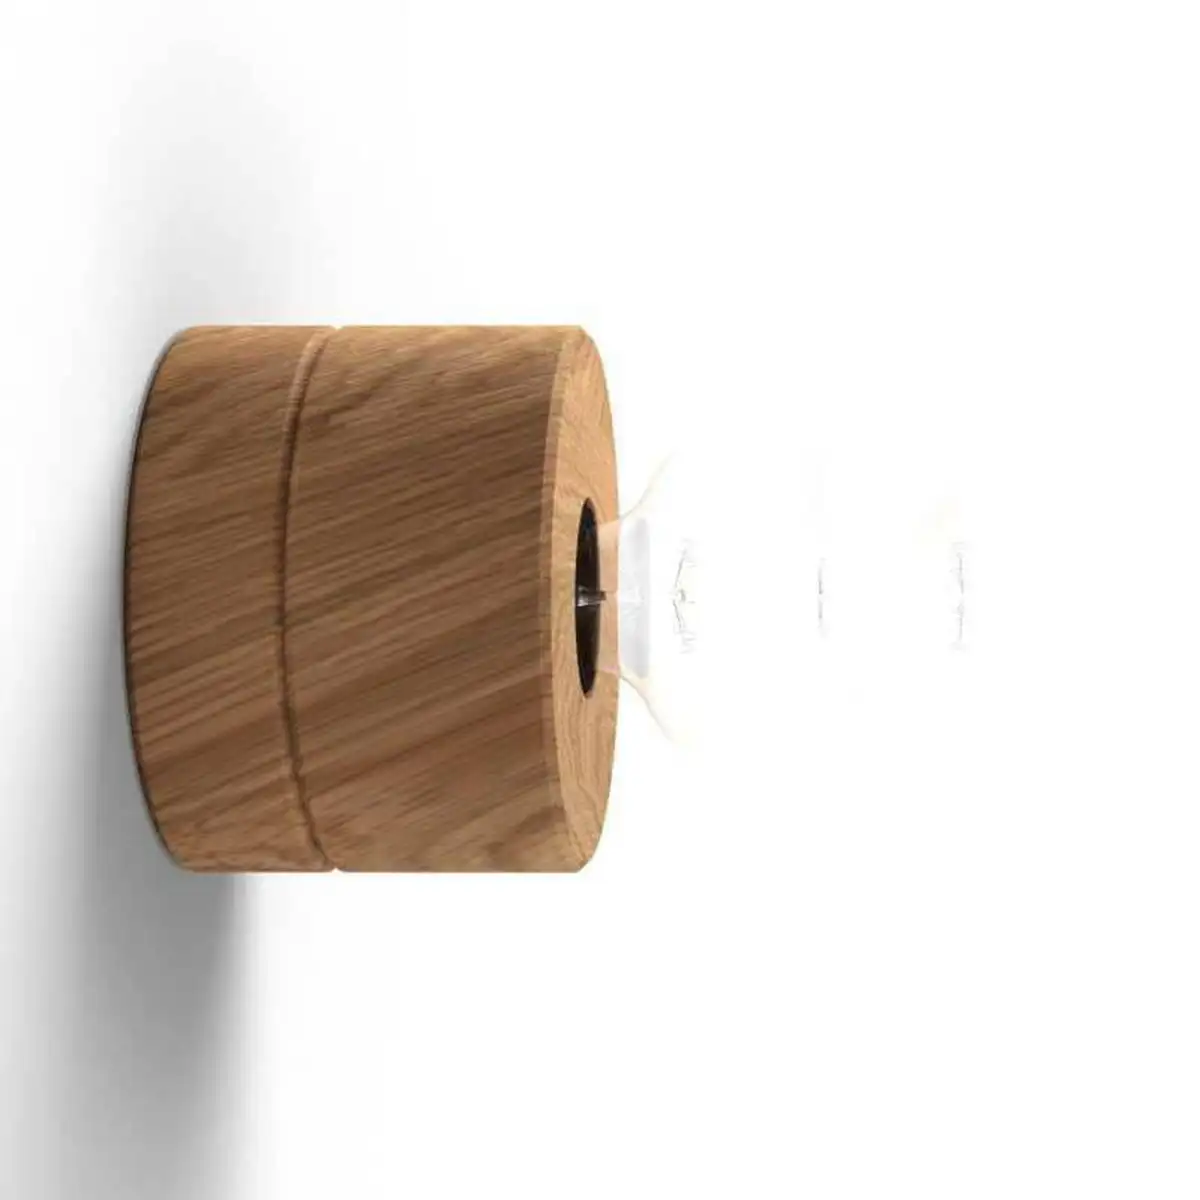 Wandlampe aus Eiche Holz, Sockel in Eiche, skandinavisches Design von ALMUT